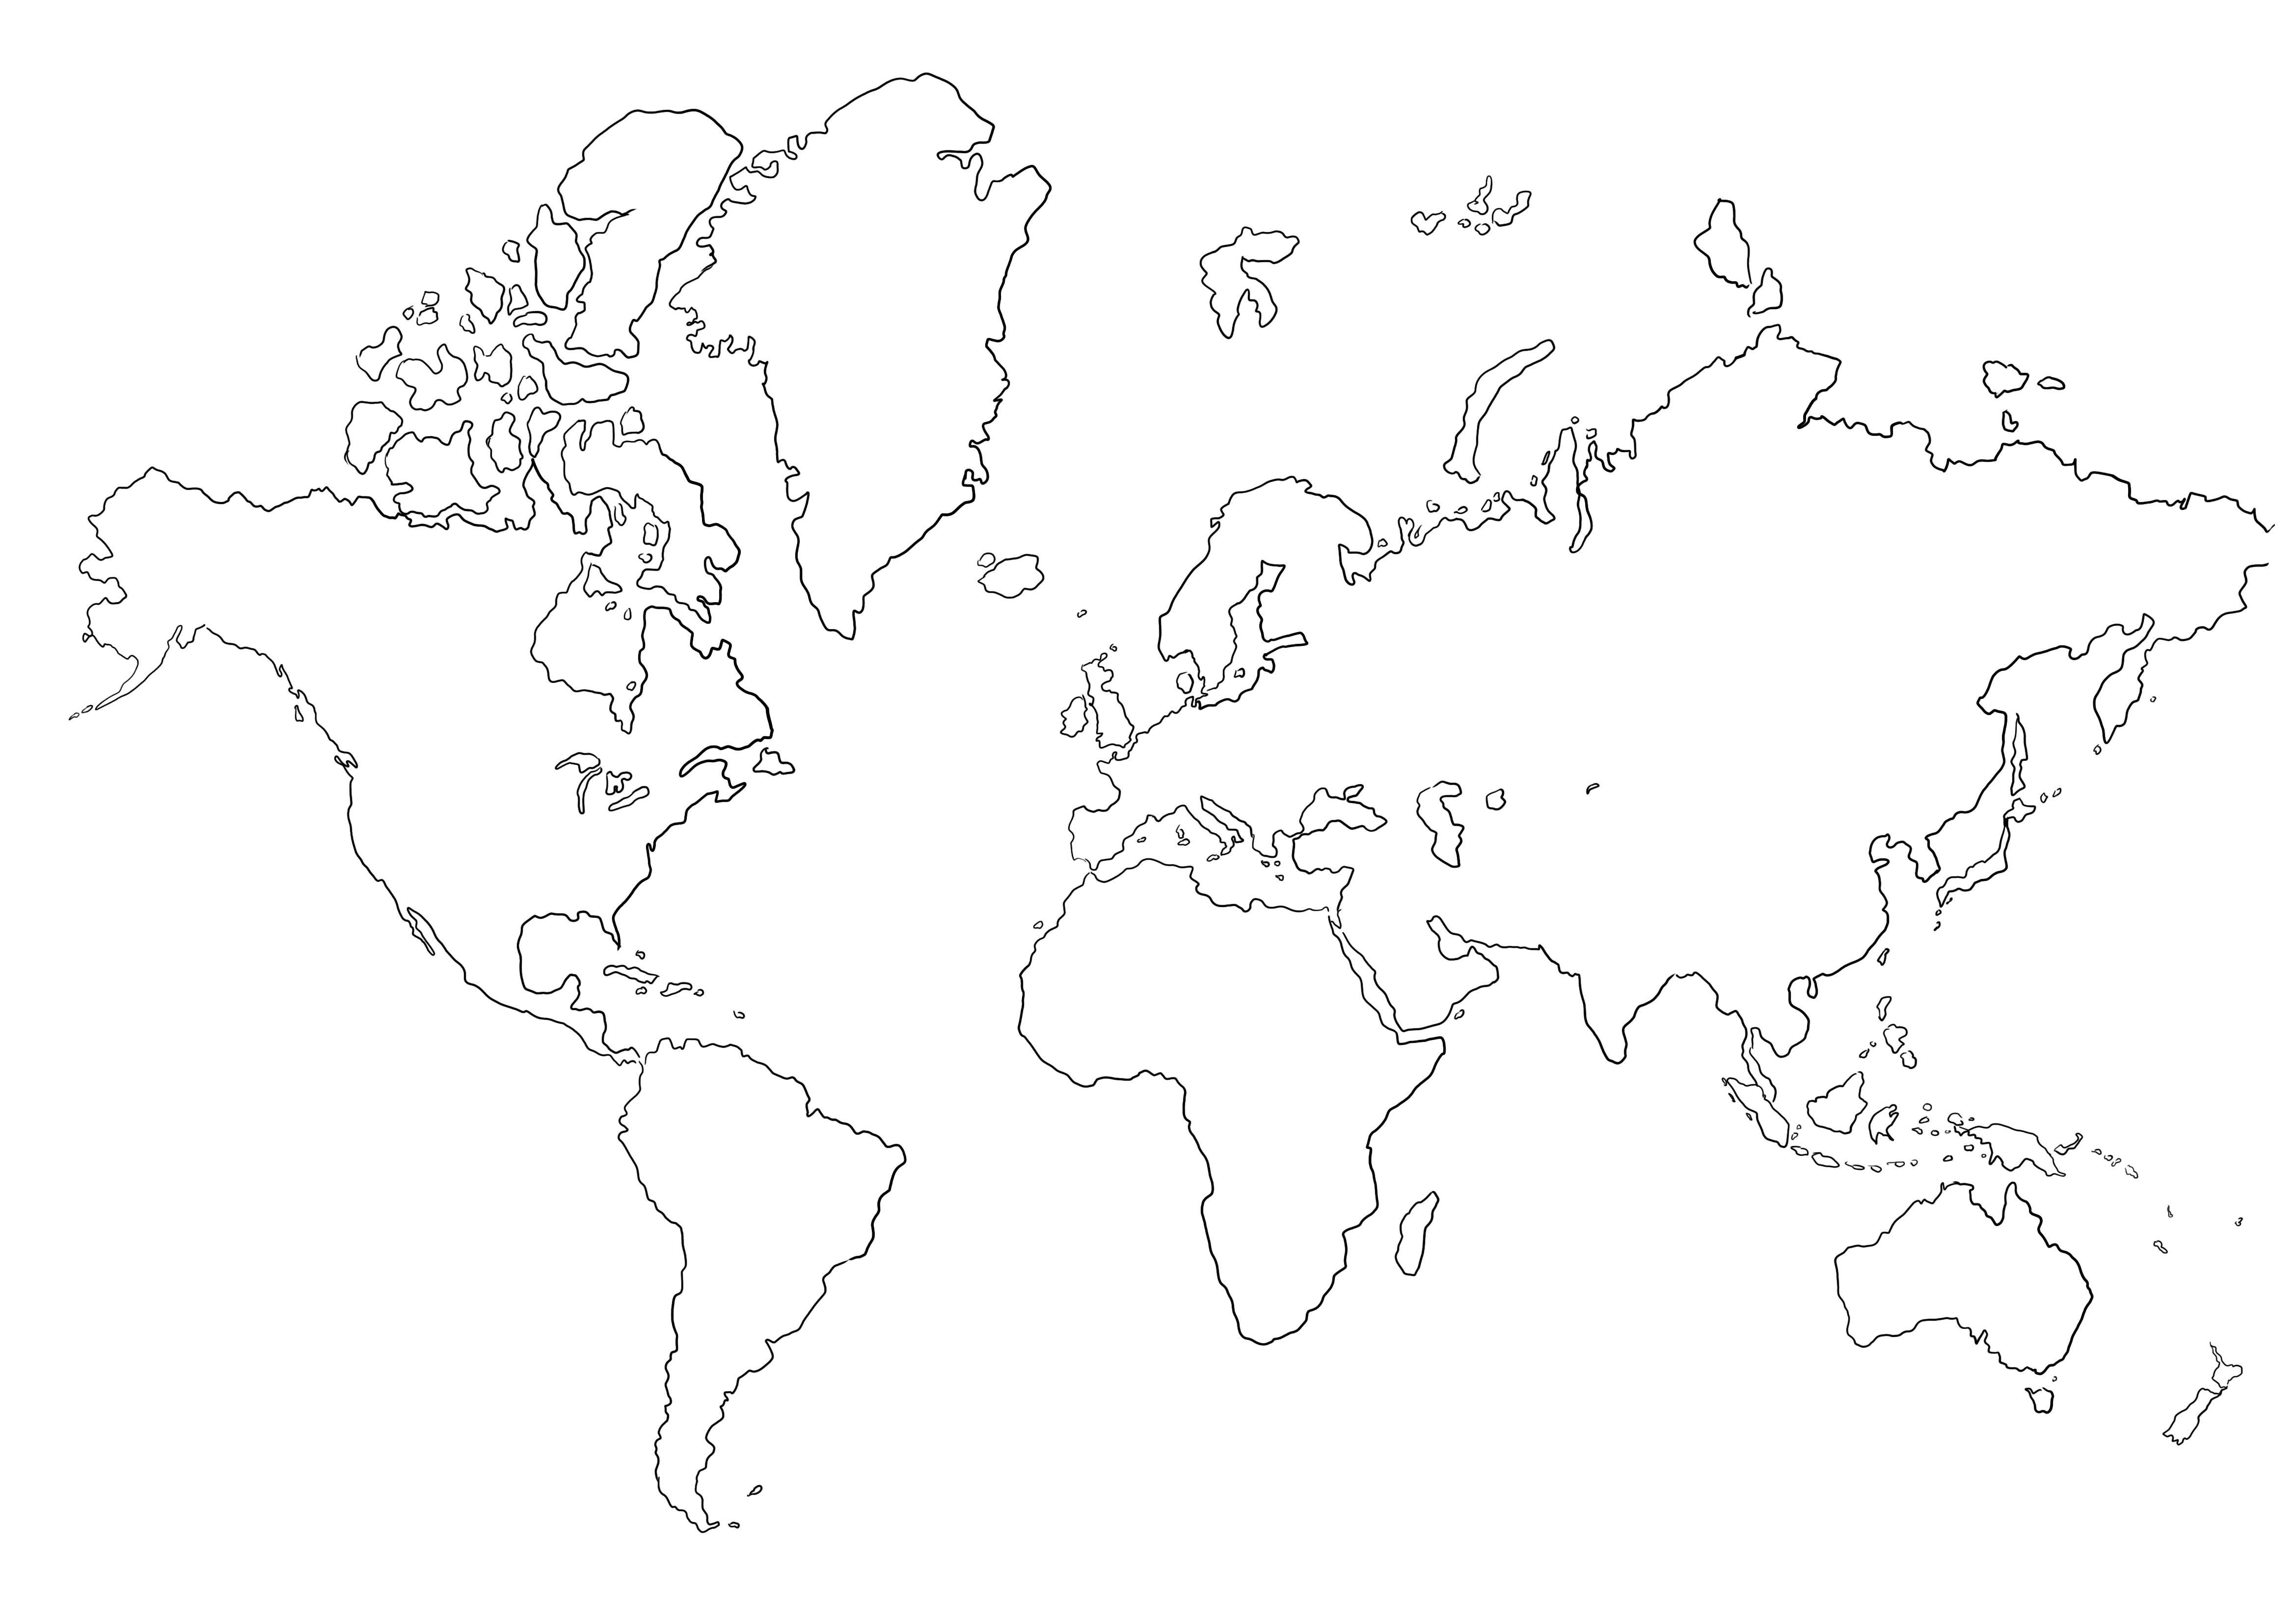 Mapa em branco do mundo para colorir sem imagens para imprimir ou salvar para mais tarde